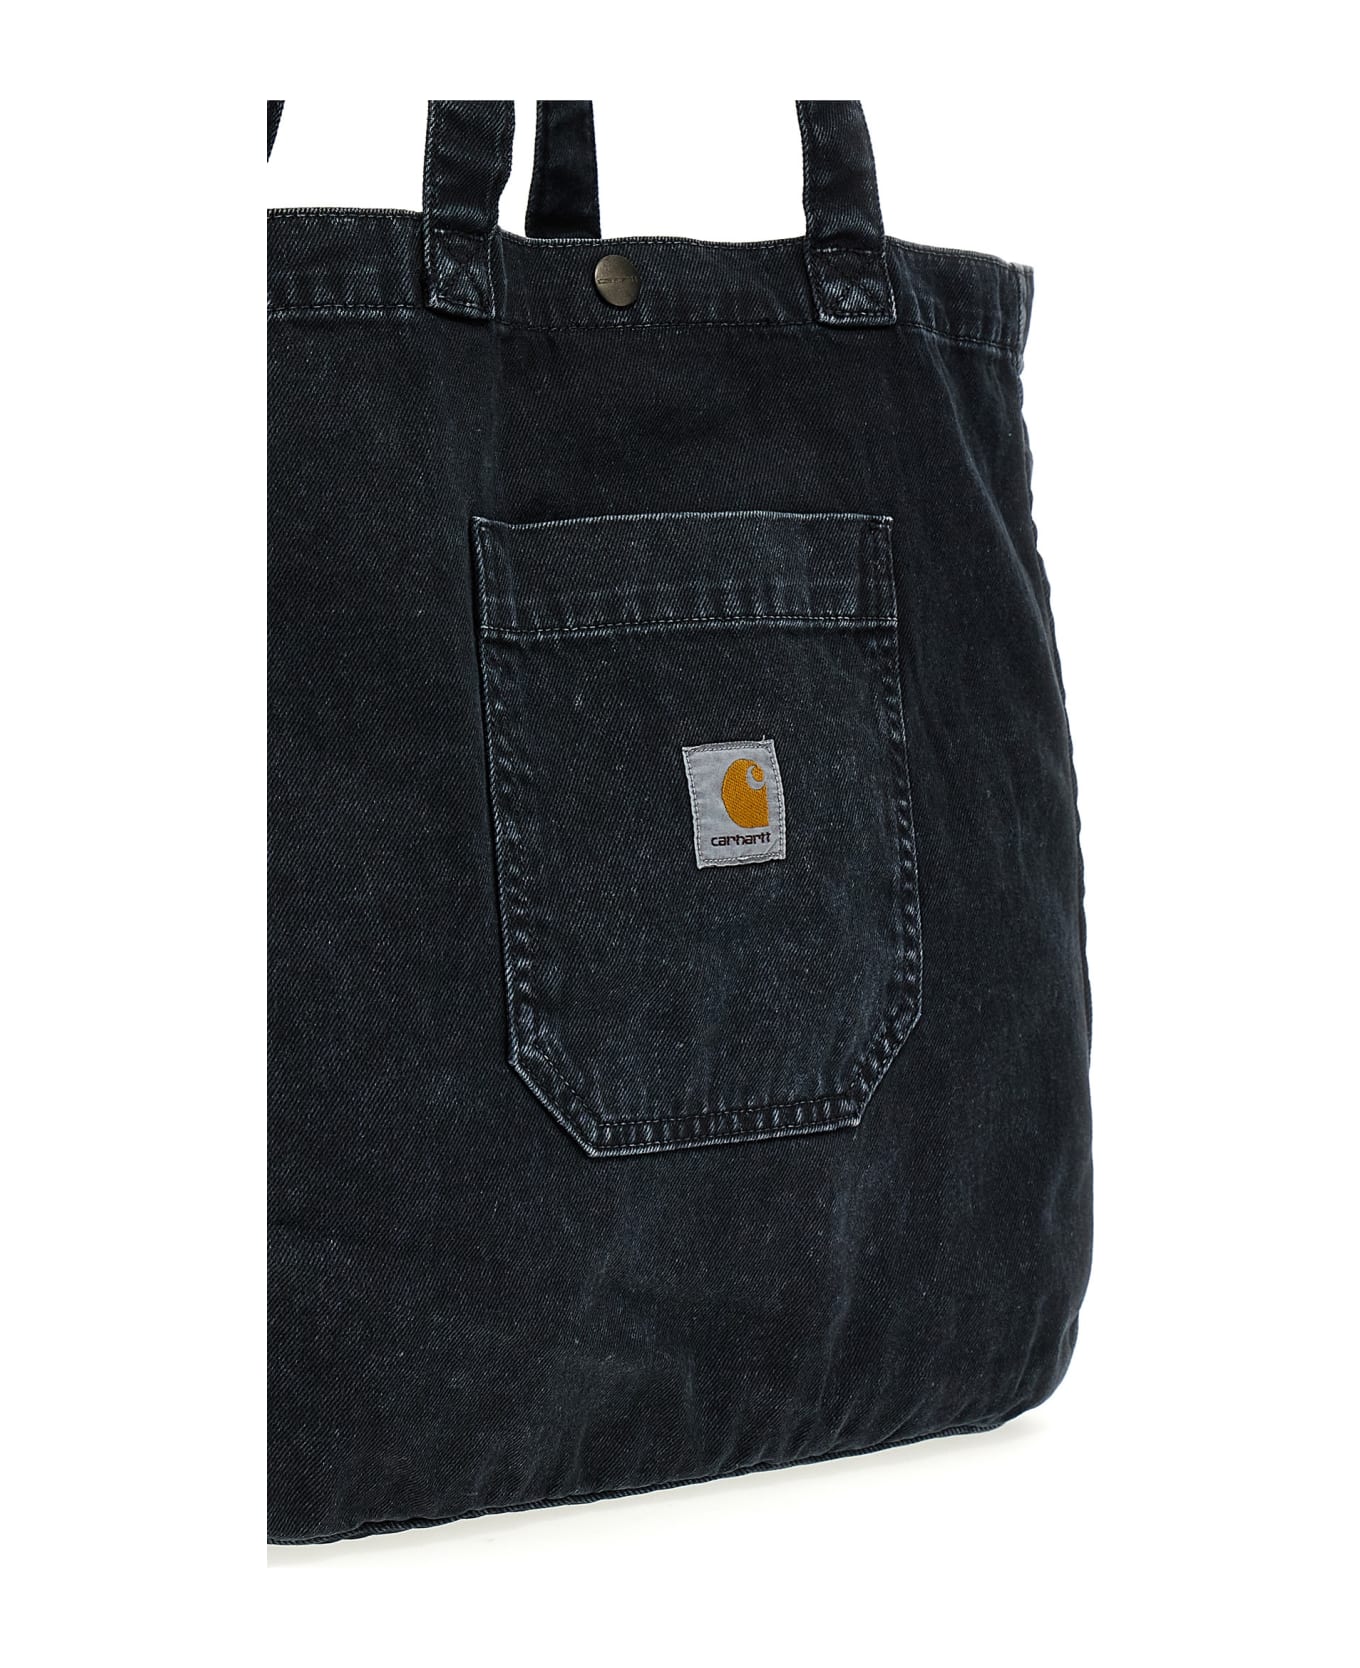 Carhartt 'garrison' Shopping Bag - Black   トートバッグ